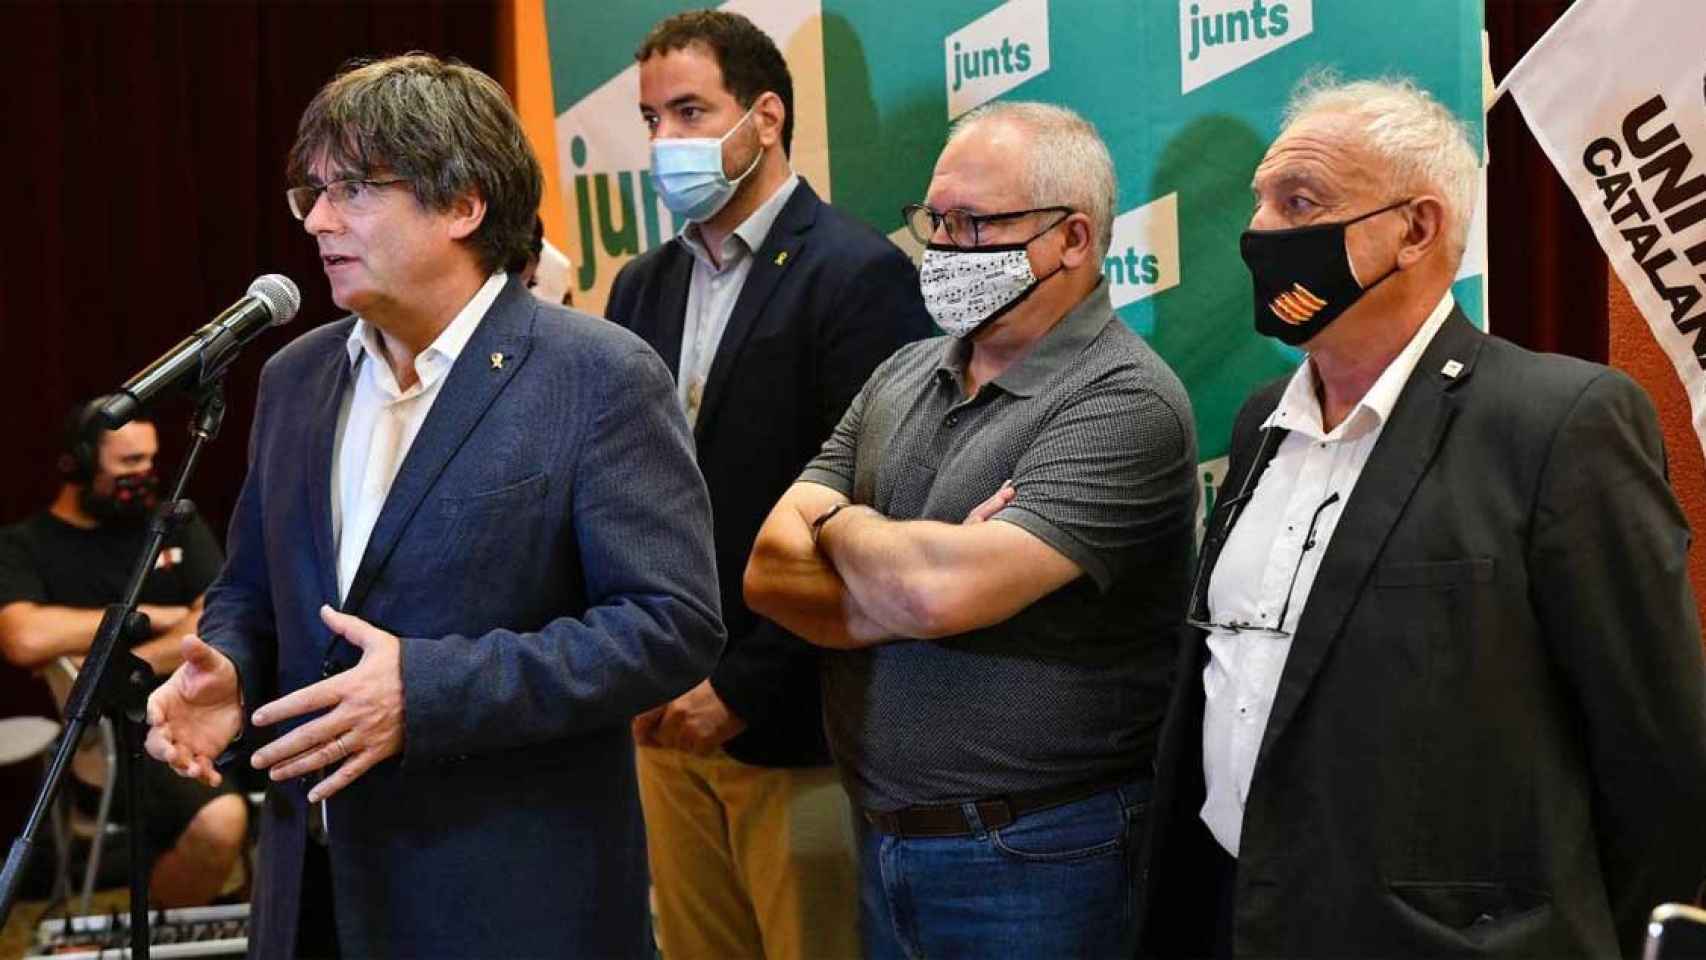 Carles Puigdemont y Lluís Puig (JxCat), en el acto del acuerdo con Unitat Catalana en su sur de Francia / JUNTS PER CATALUNYA